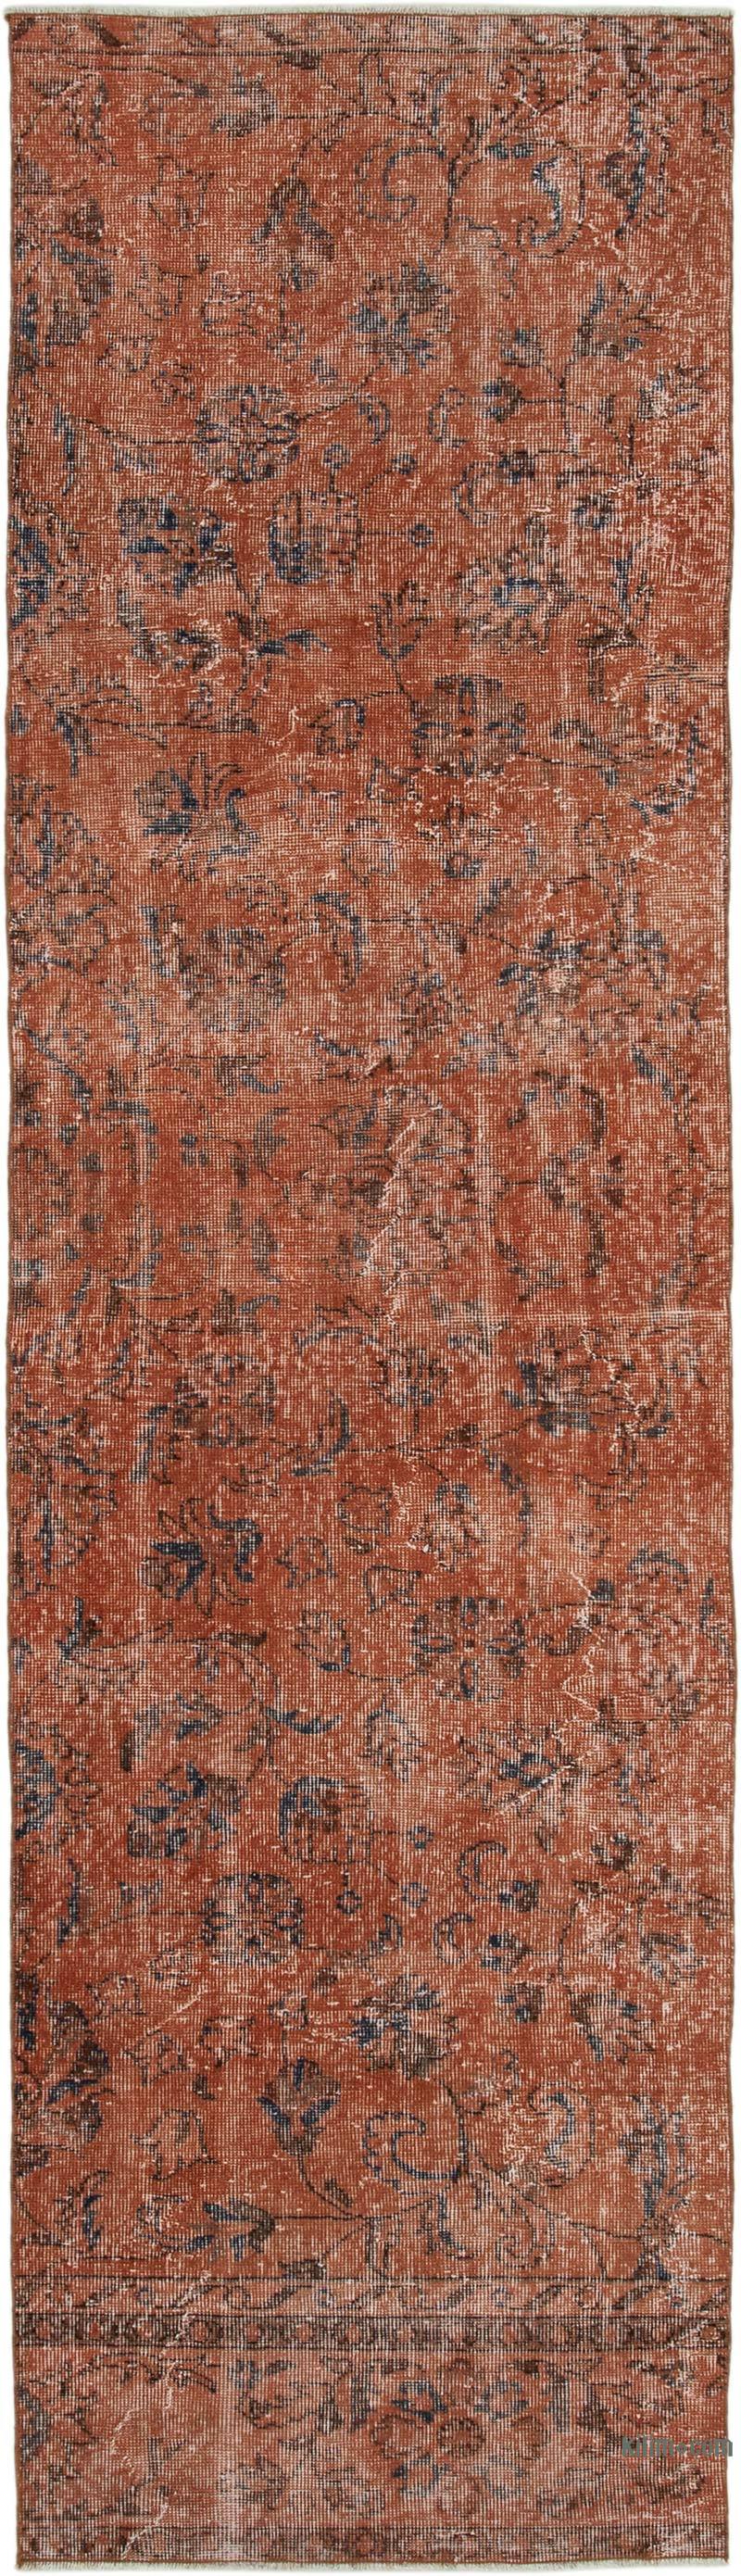 Turuncu Boyalı El Dokuma Vintage Halı Yolluk - 87 cm x 305 cm - K0050108